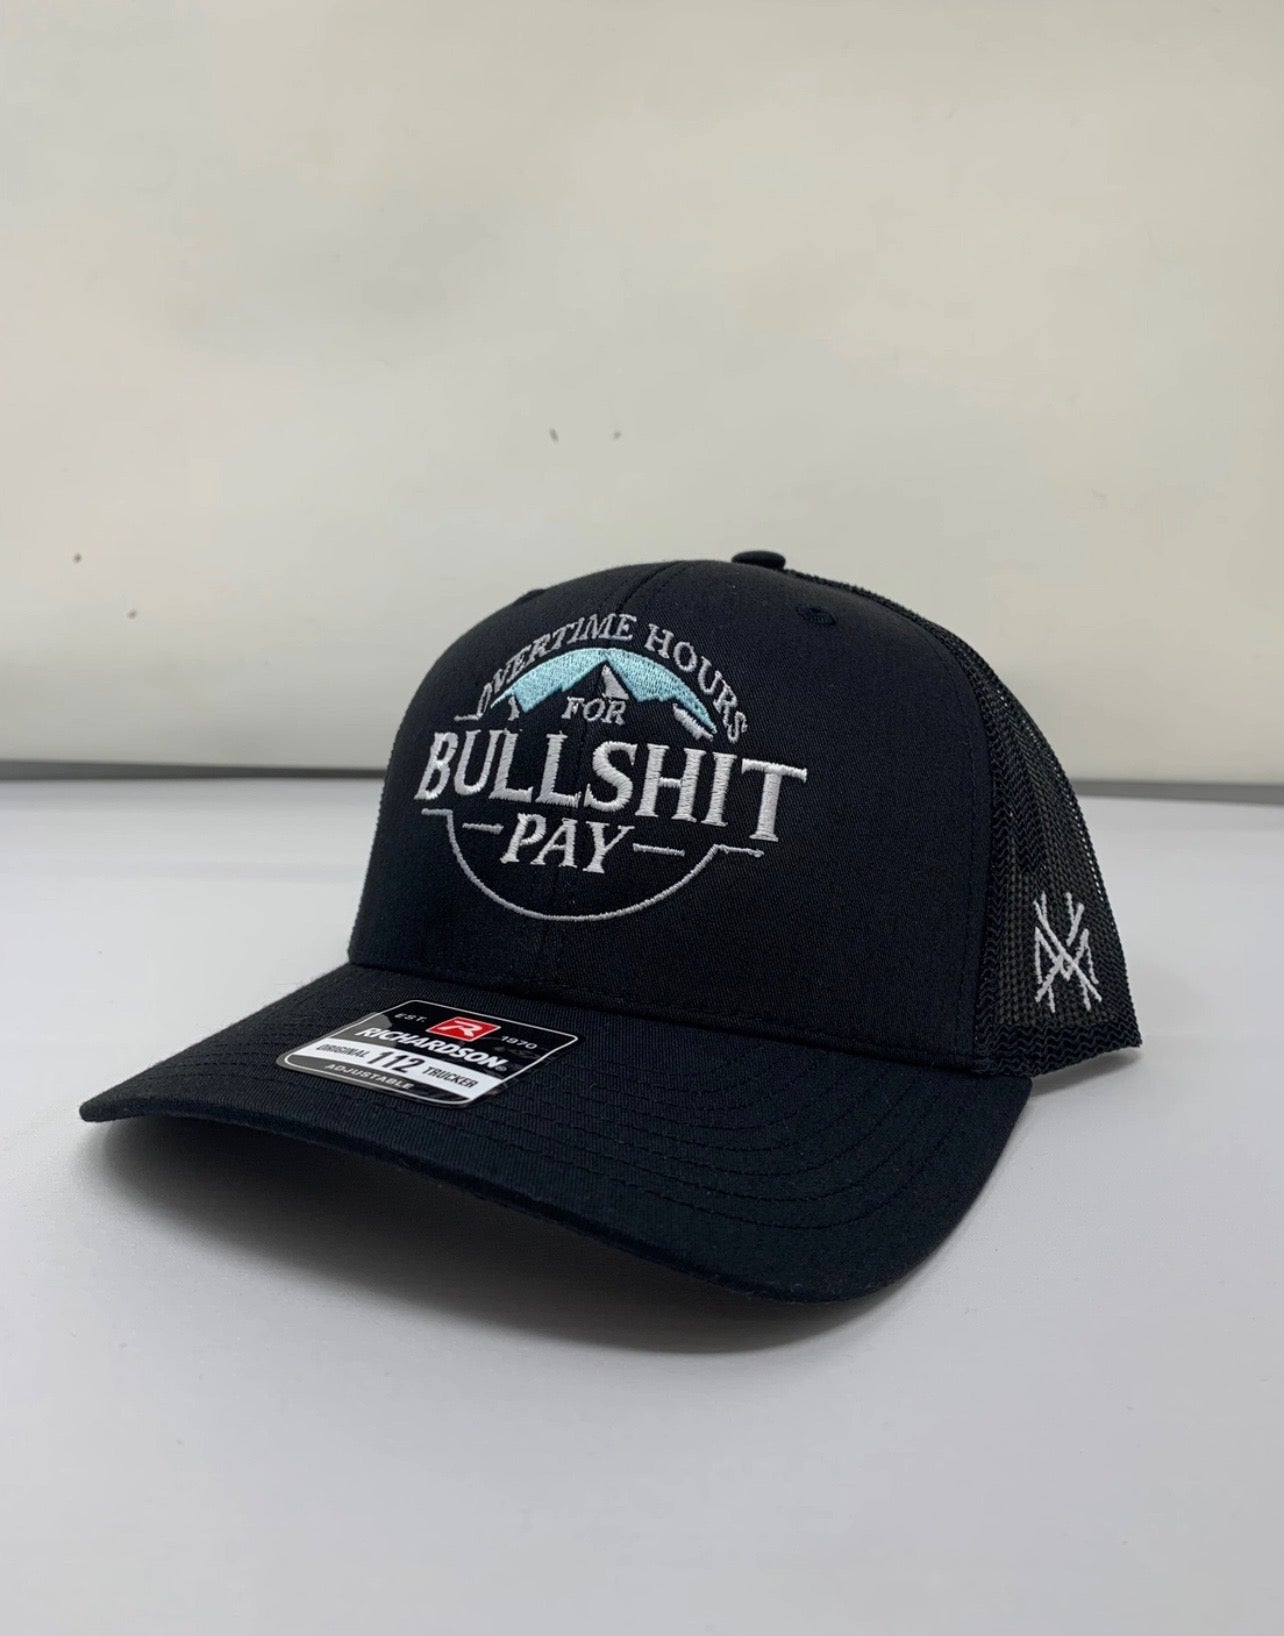 Overtime Hours For Bullshit Pay Busch Hat